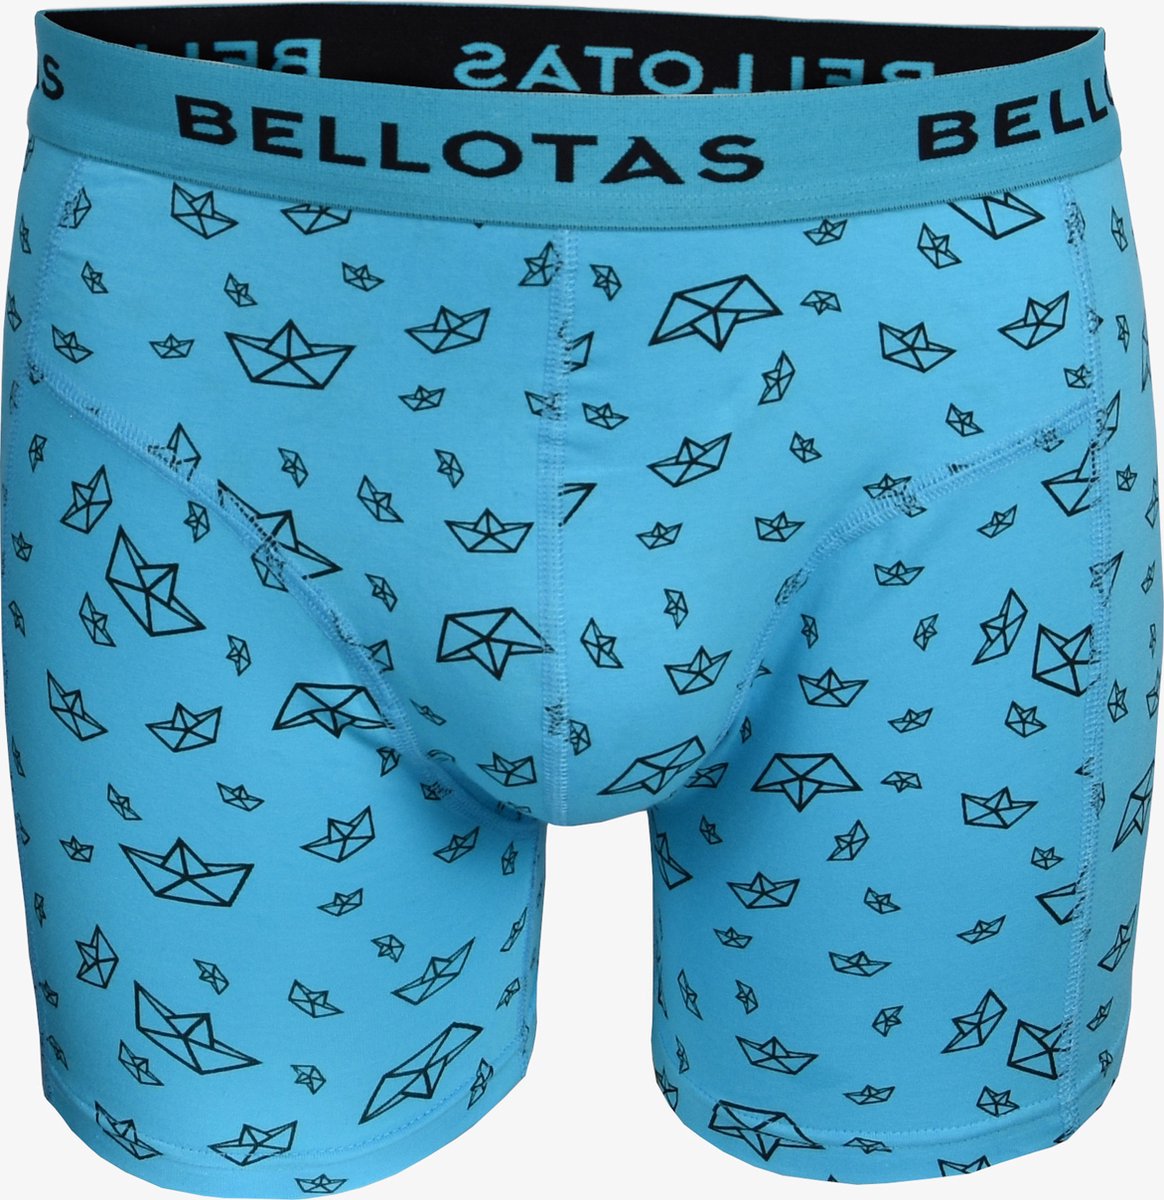 Bellotas - Boxershort - Aster M